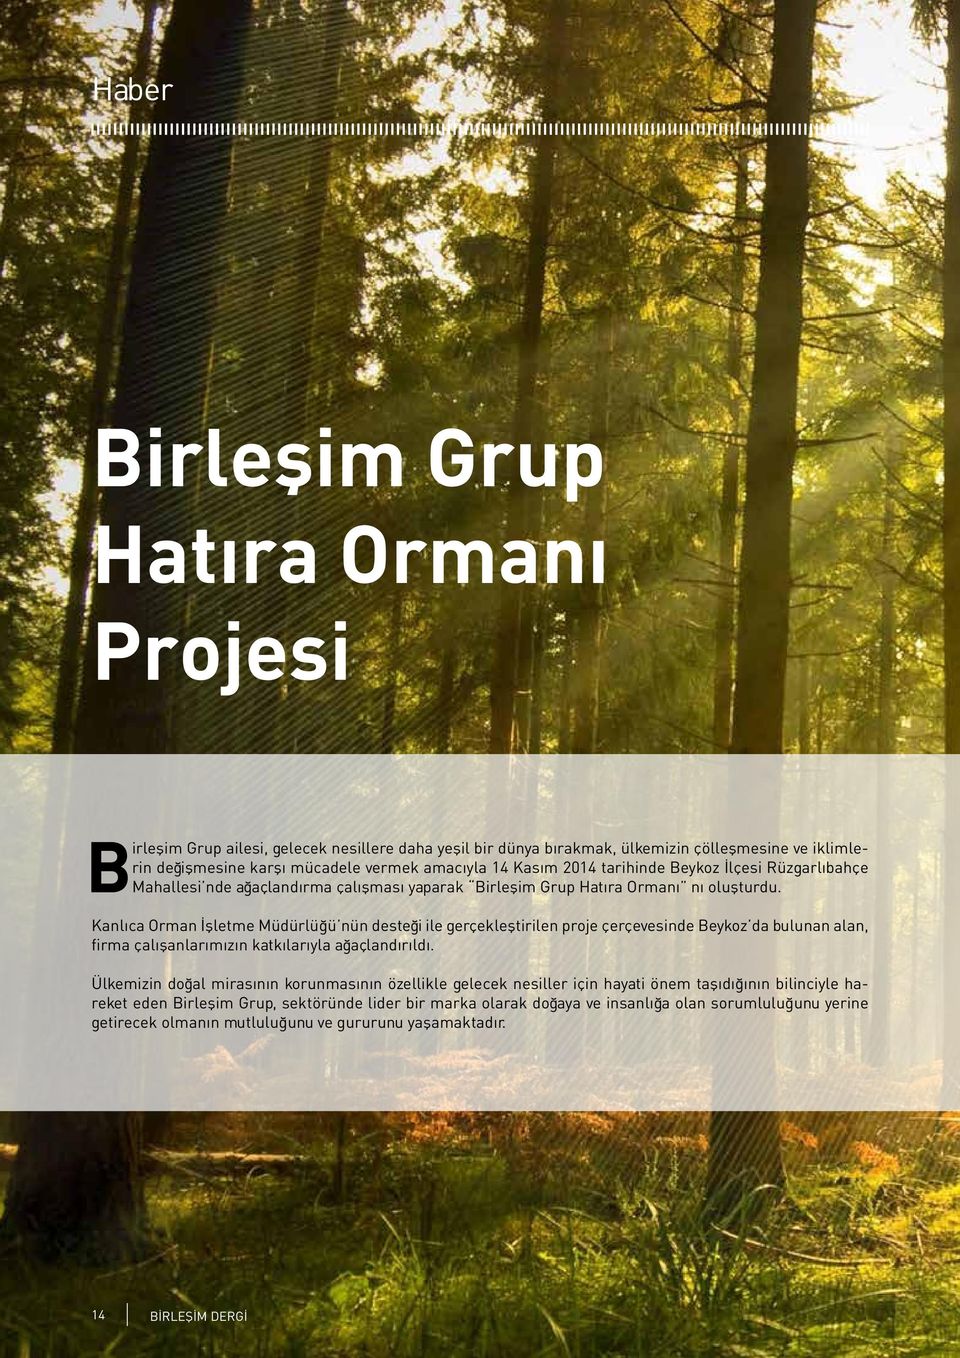 Kanlıca Orman İşletme Müdürlüğü nün desteği ile gerçekleştirilen proje çerçevesinde Beykoz da bulunan alan, firma çalışanlarımızın katkılarıyla ağaçlandırıldı.